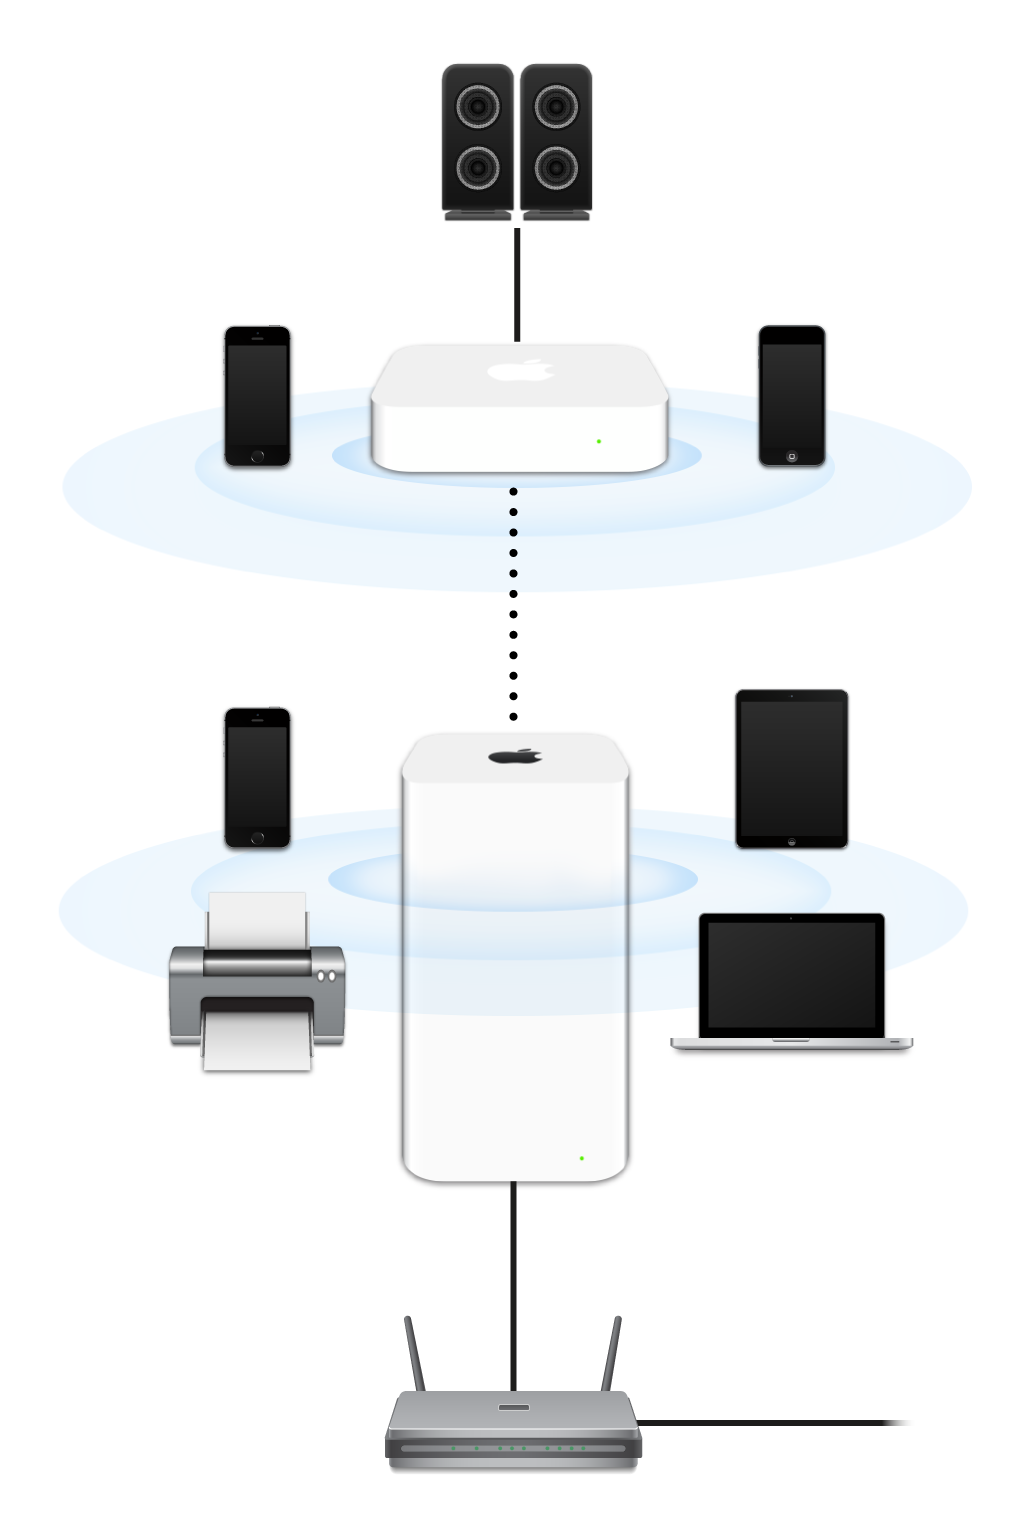 Et utvidet nettverk, inkludert en AirPort Extreme og en AirPort Express som er tilkoblet et modem og som overfører data til flere typer enheter.